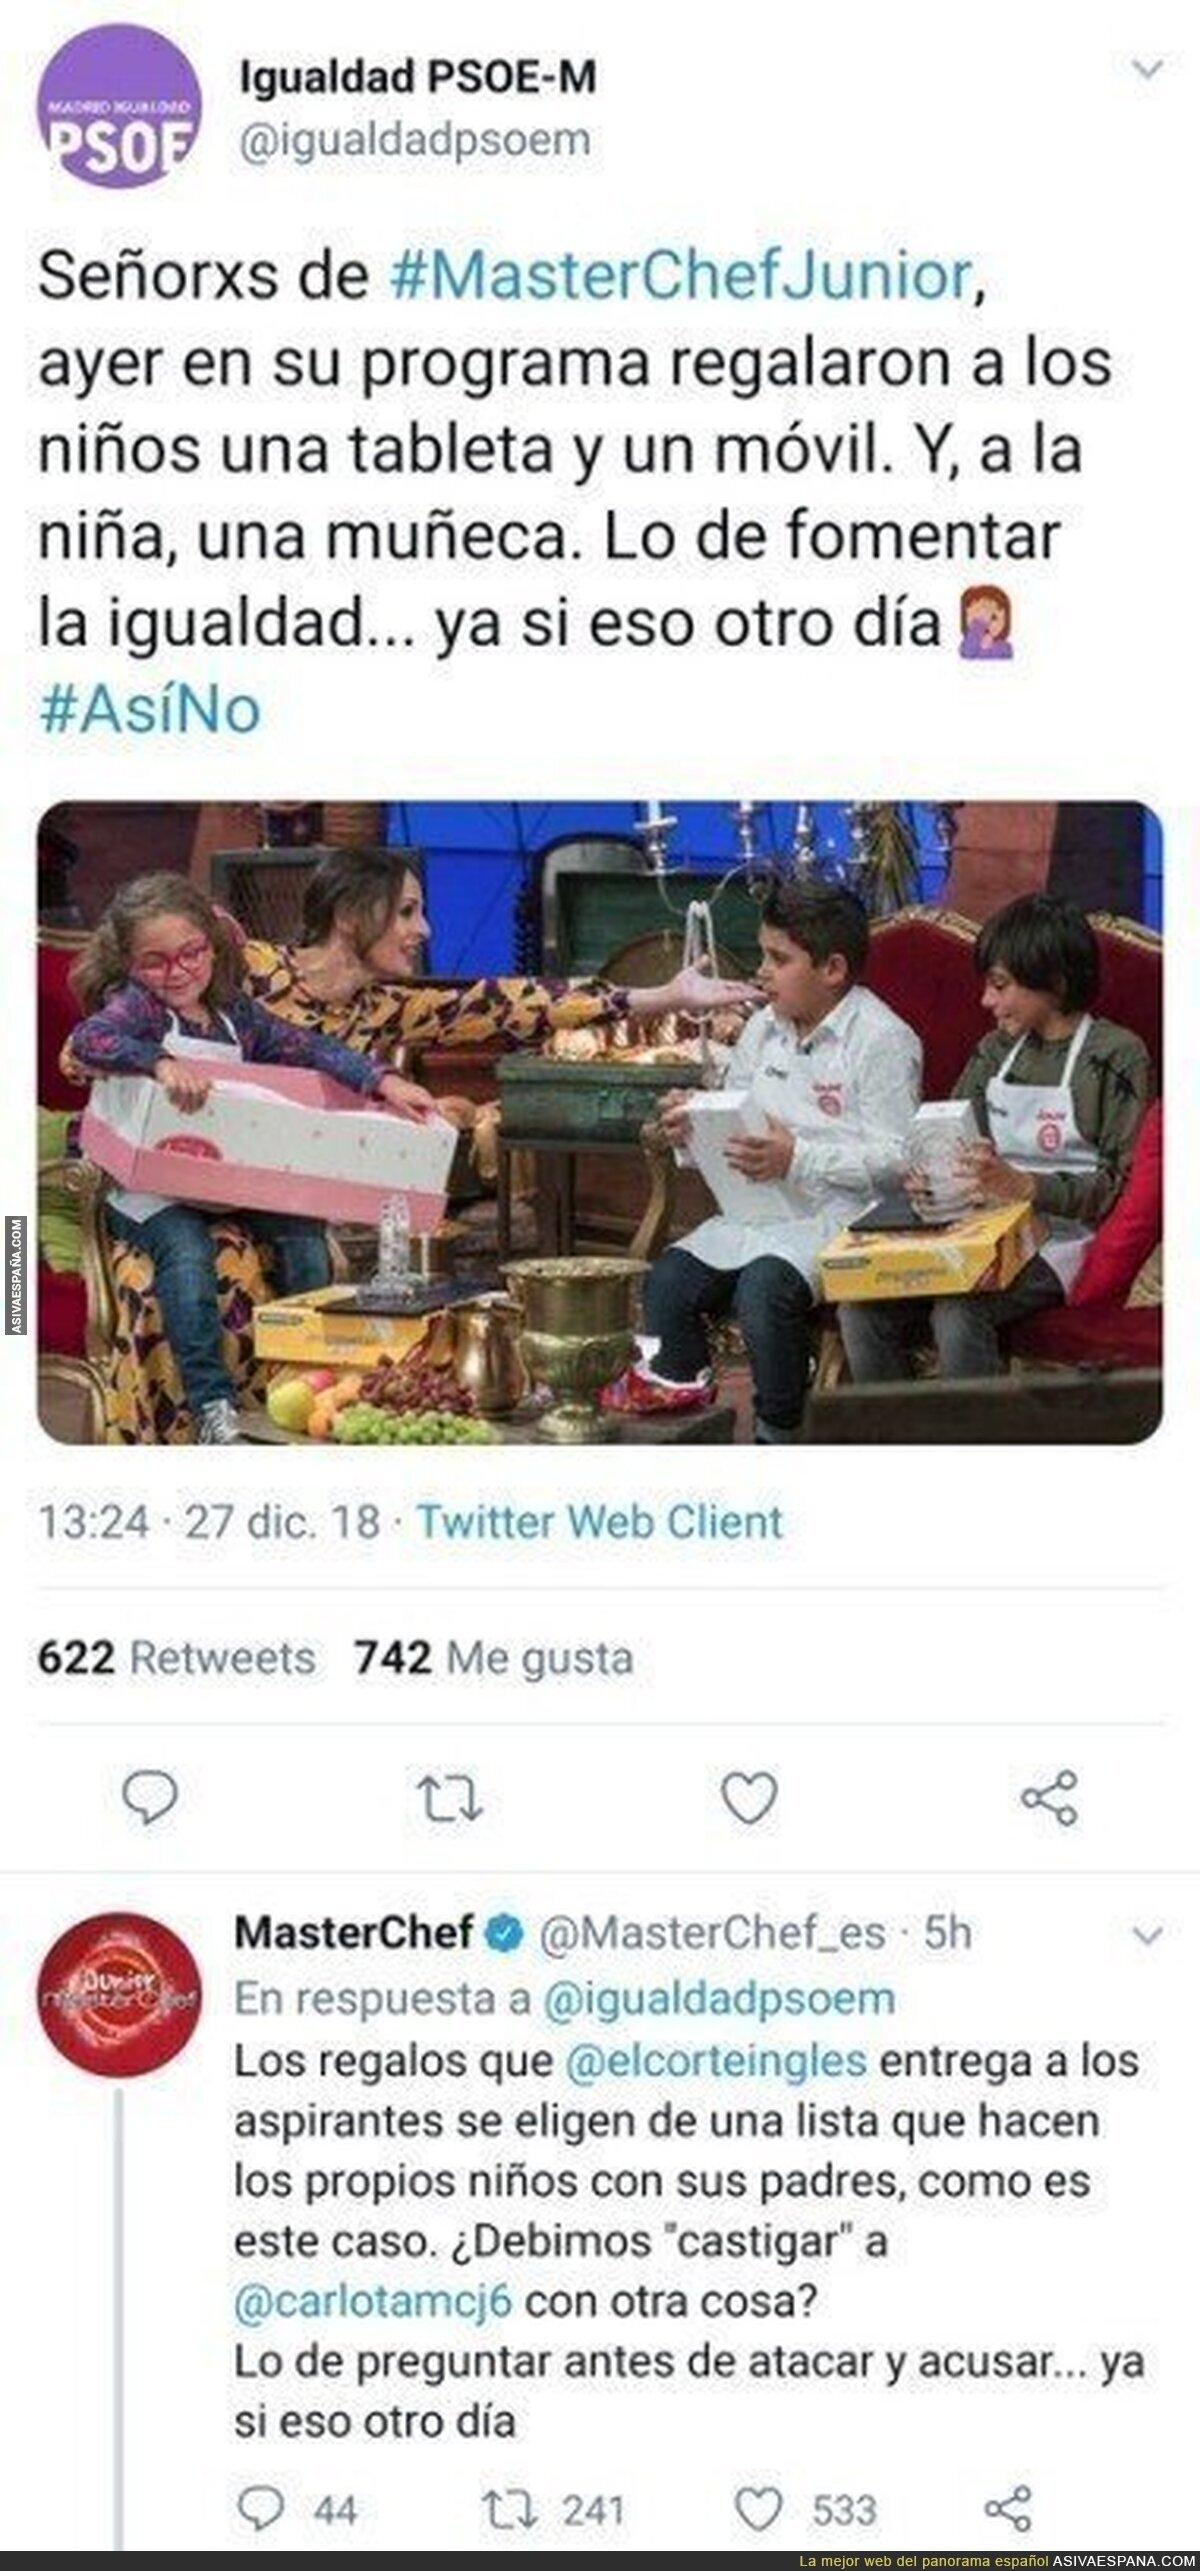 El PSOE en busca de la igualdad por los regalos a niños y niñas en Masterchef y hace el ridículo